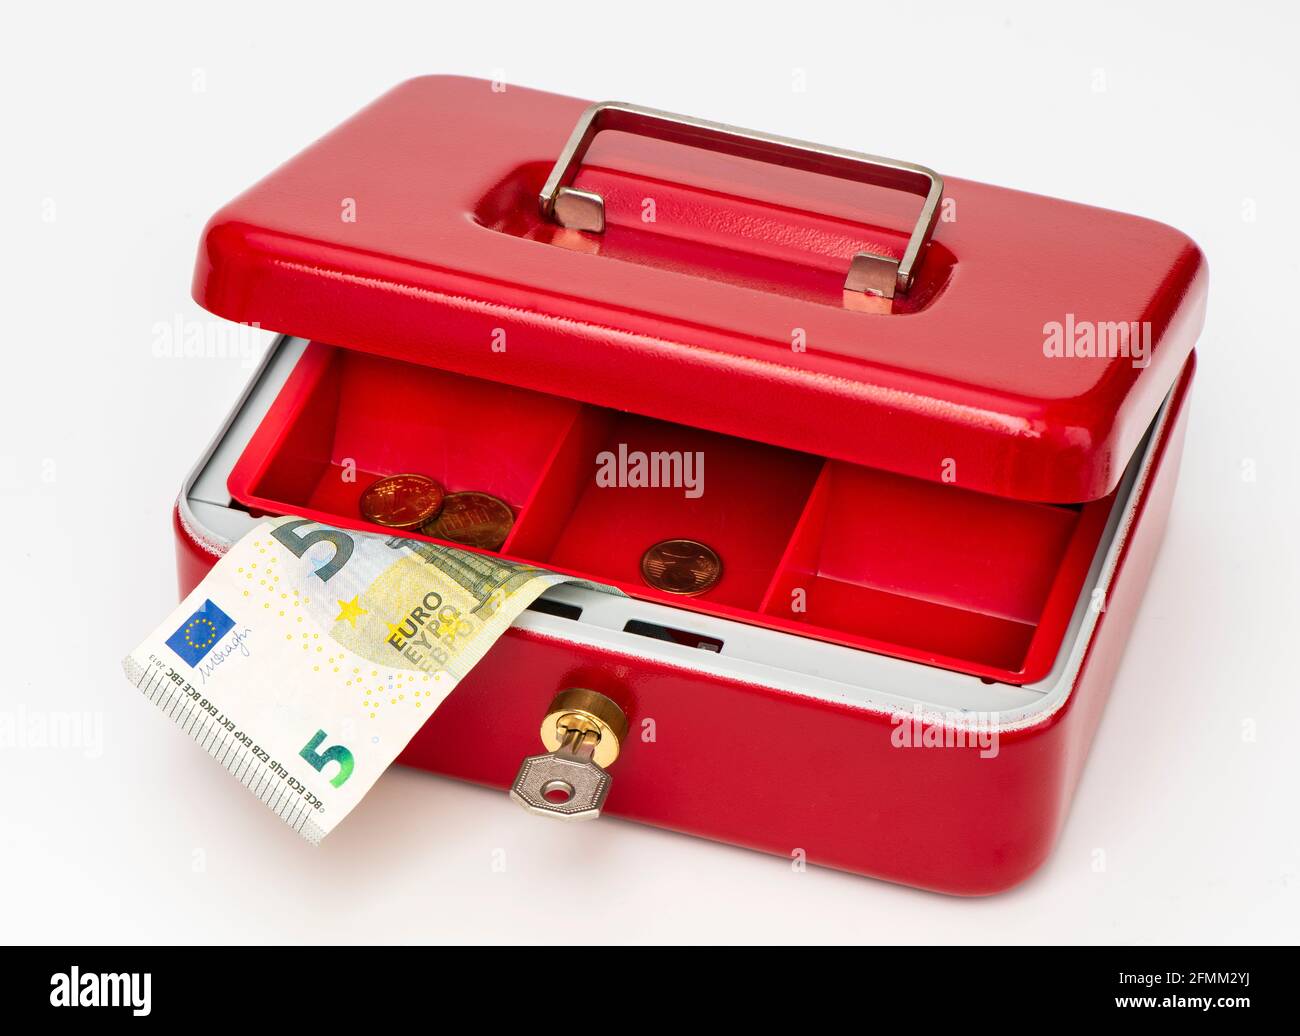 Geldkassette mit wenig Bargeld Foto de stock